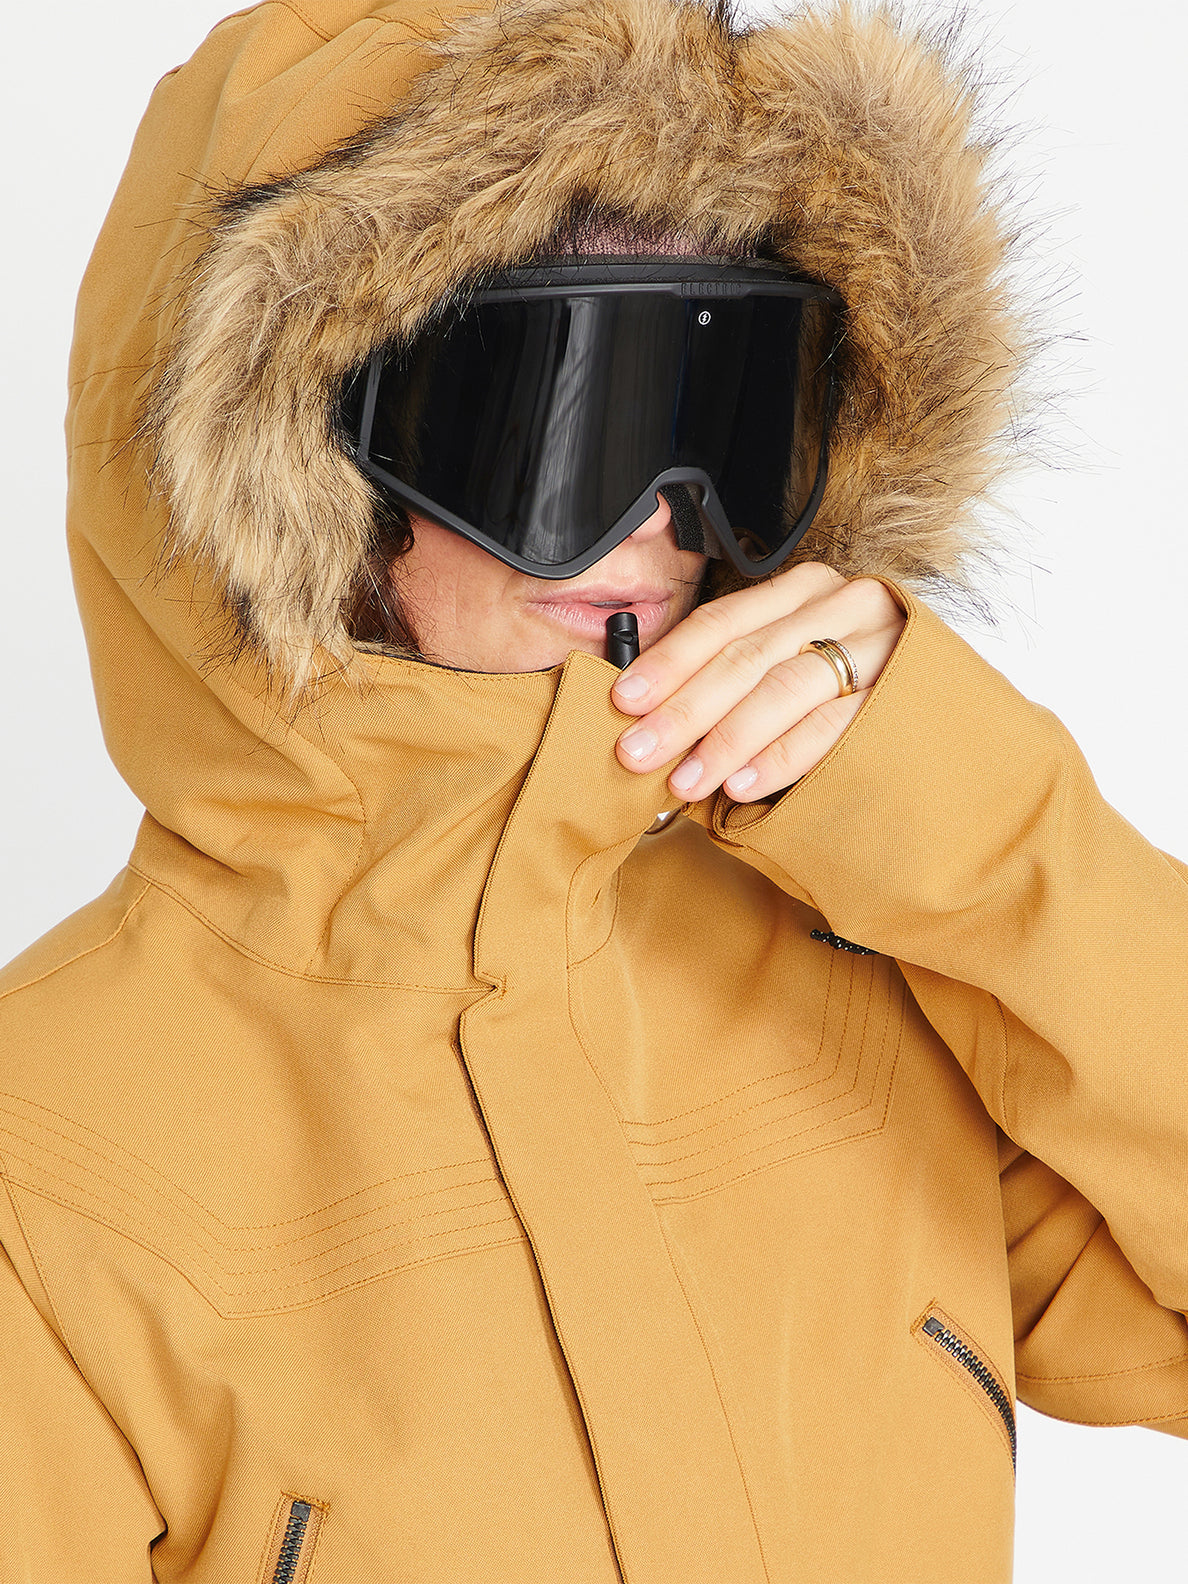 Chaqueta de snowboard Mujer Volcom Shadow Insulated Jacket - Caramel | Chaquetas de snowboard Mujer | Snowboard Shop | Volcom Shop | surfdevils.com